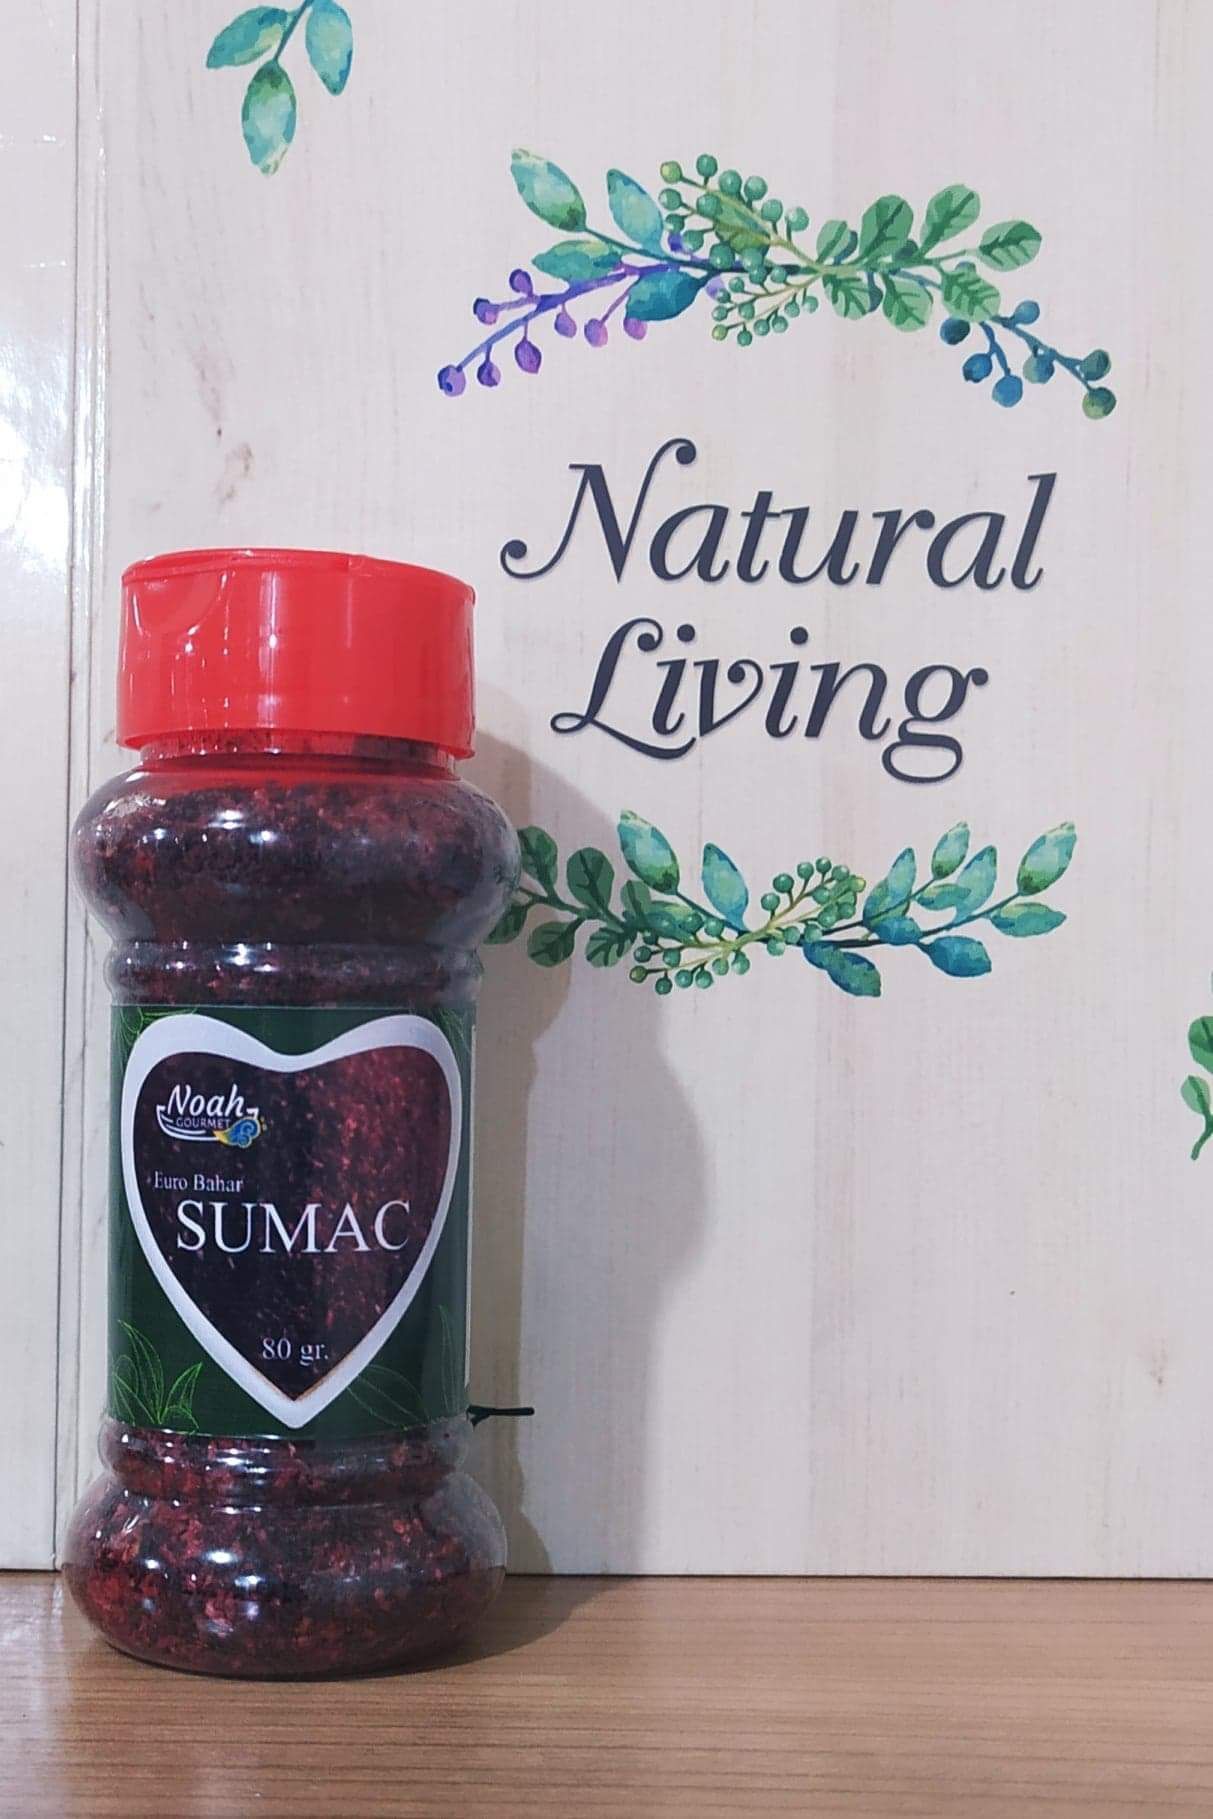 Sumac natural product 80 g (Halal)